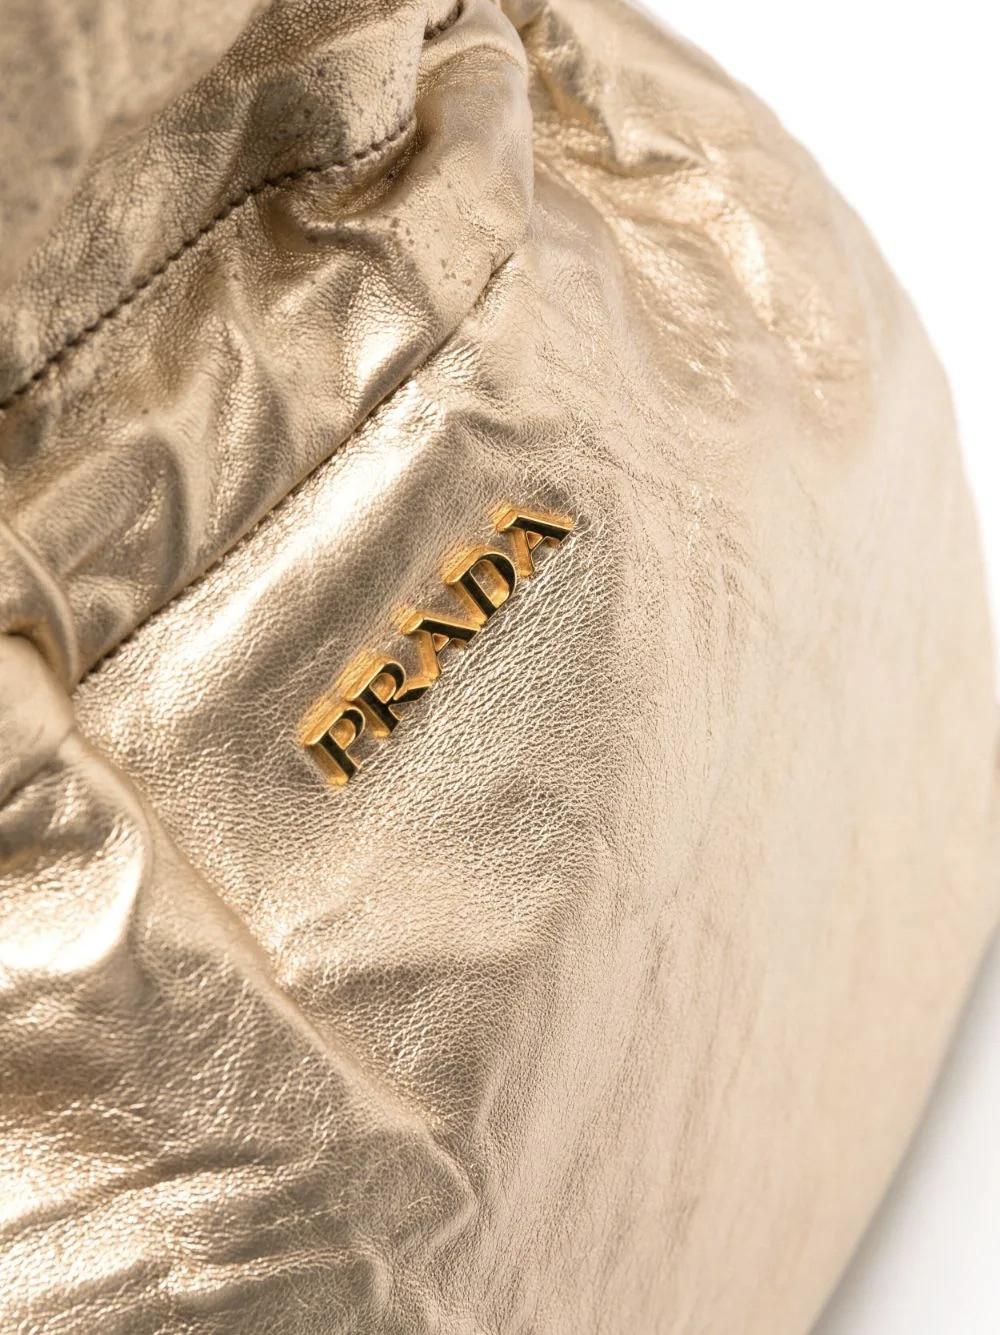 Grand sac fourre-tout en cuir doré Prada avec logo sur le devant, anses naturelles et fermeture à cordon naturel, finition en cuir d'agneau souple moussé, fermeture magnétique, doublure intérieure habituelle en monogramme Prada. 
100% cuir
En bon